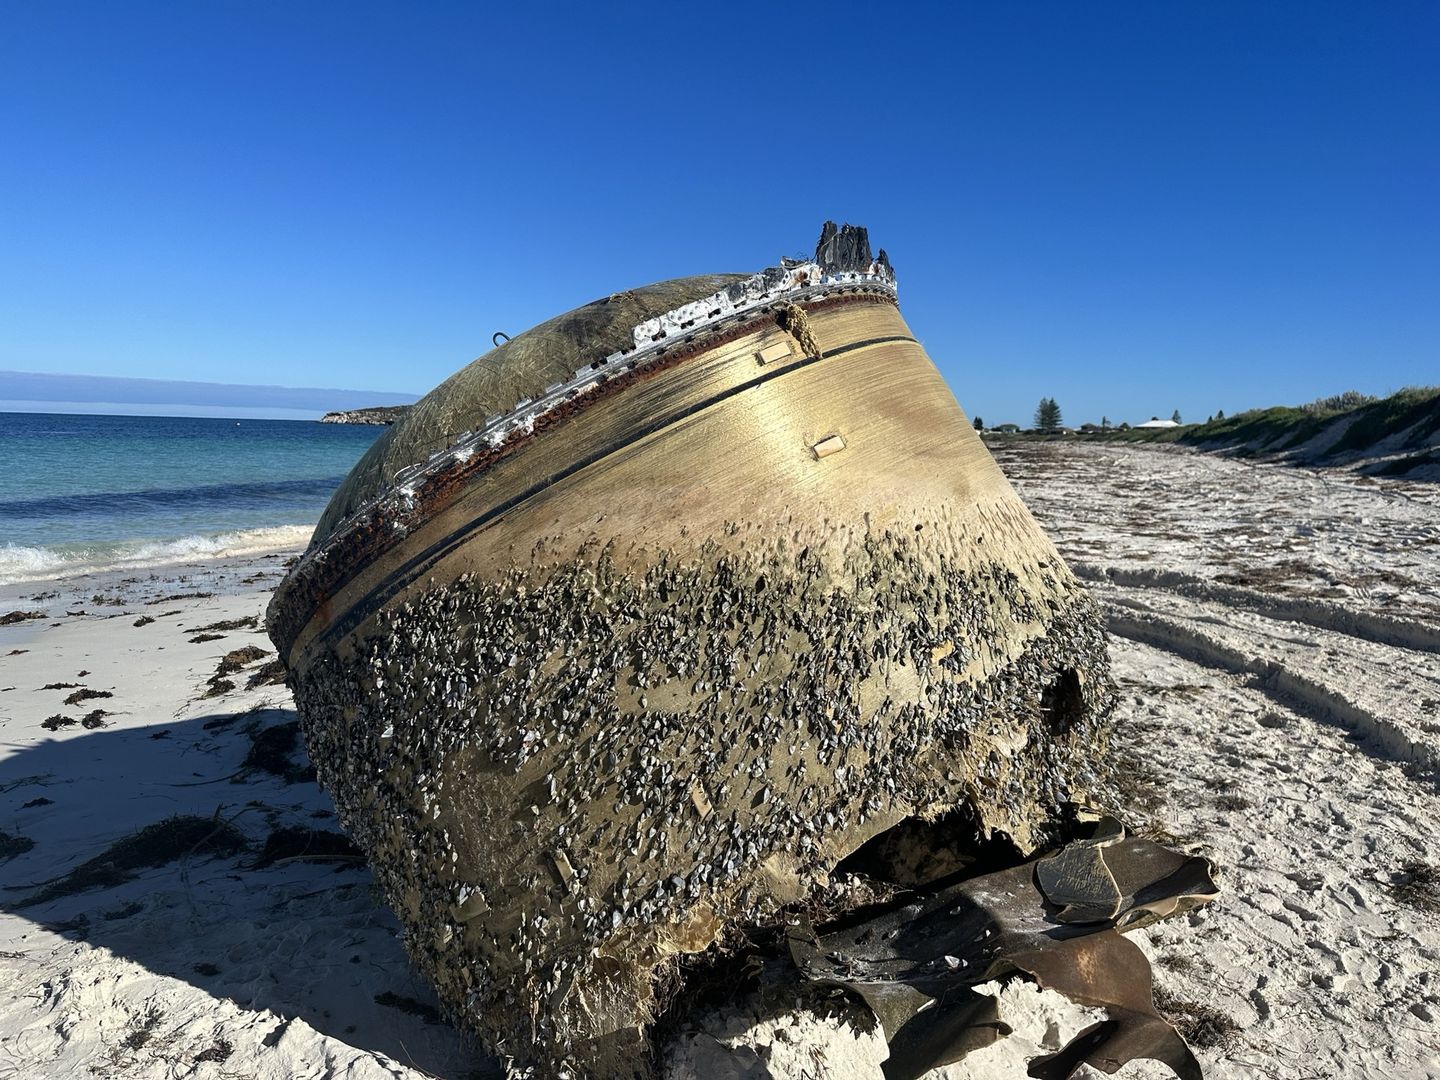 Tajemniczy obiekt na plaży w Australii. Może pochodzić z kosmosu